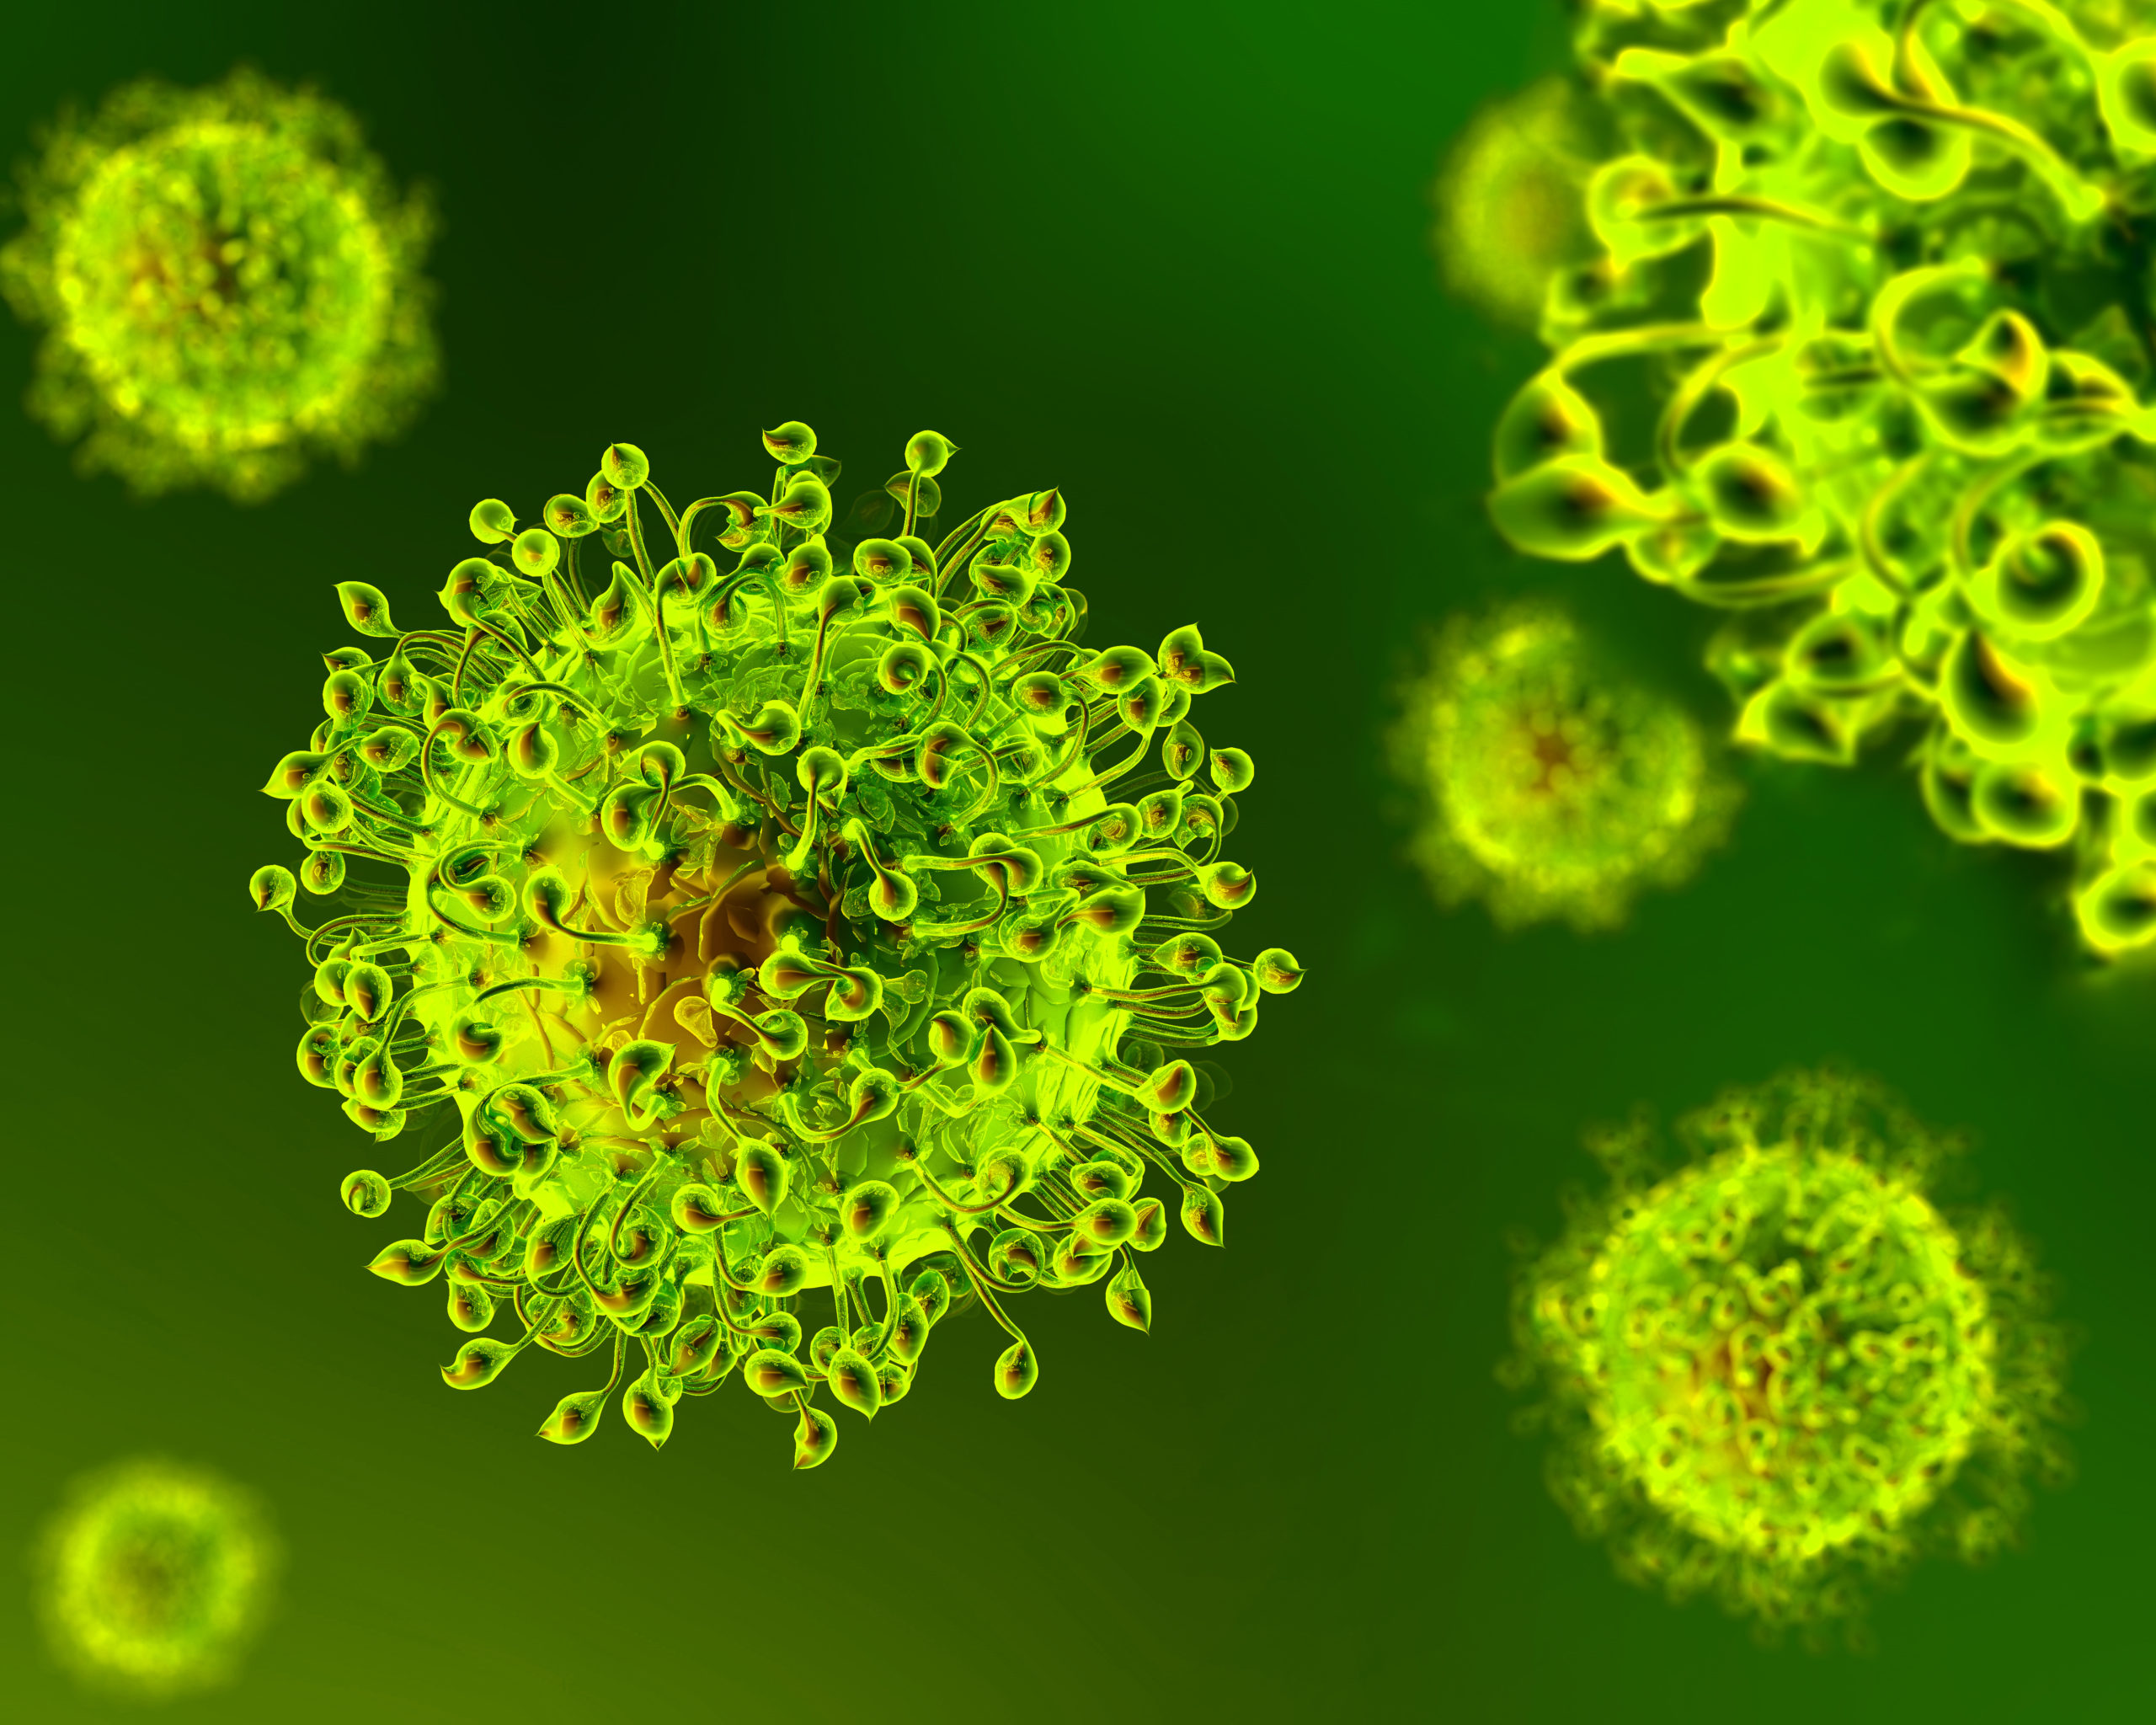 Обои коронавирус клетки зеленый фон на рабочий стол